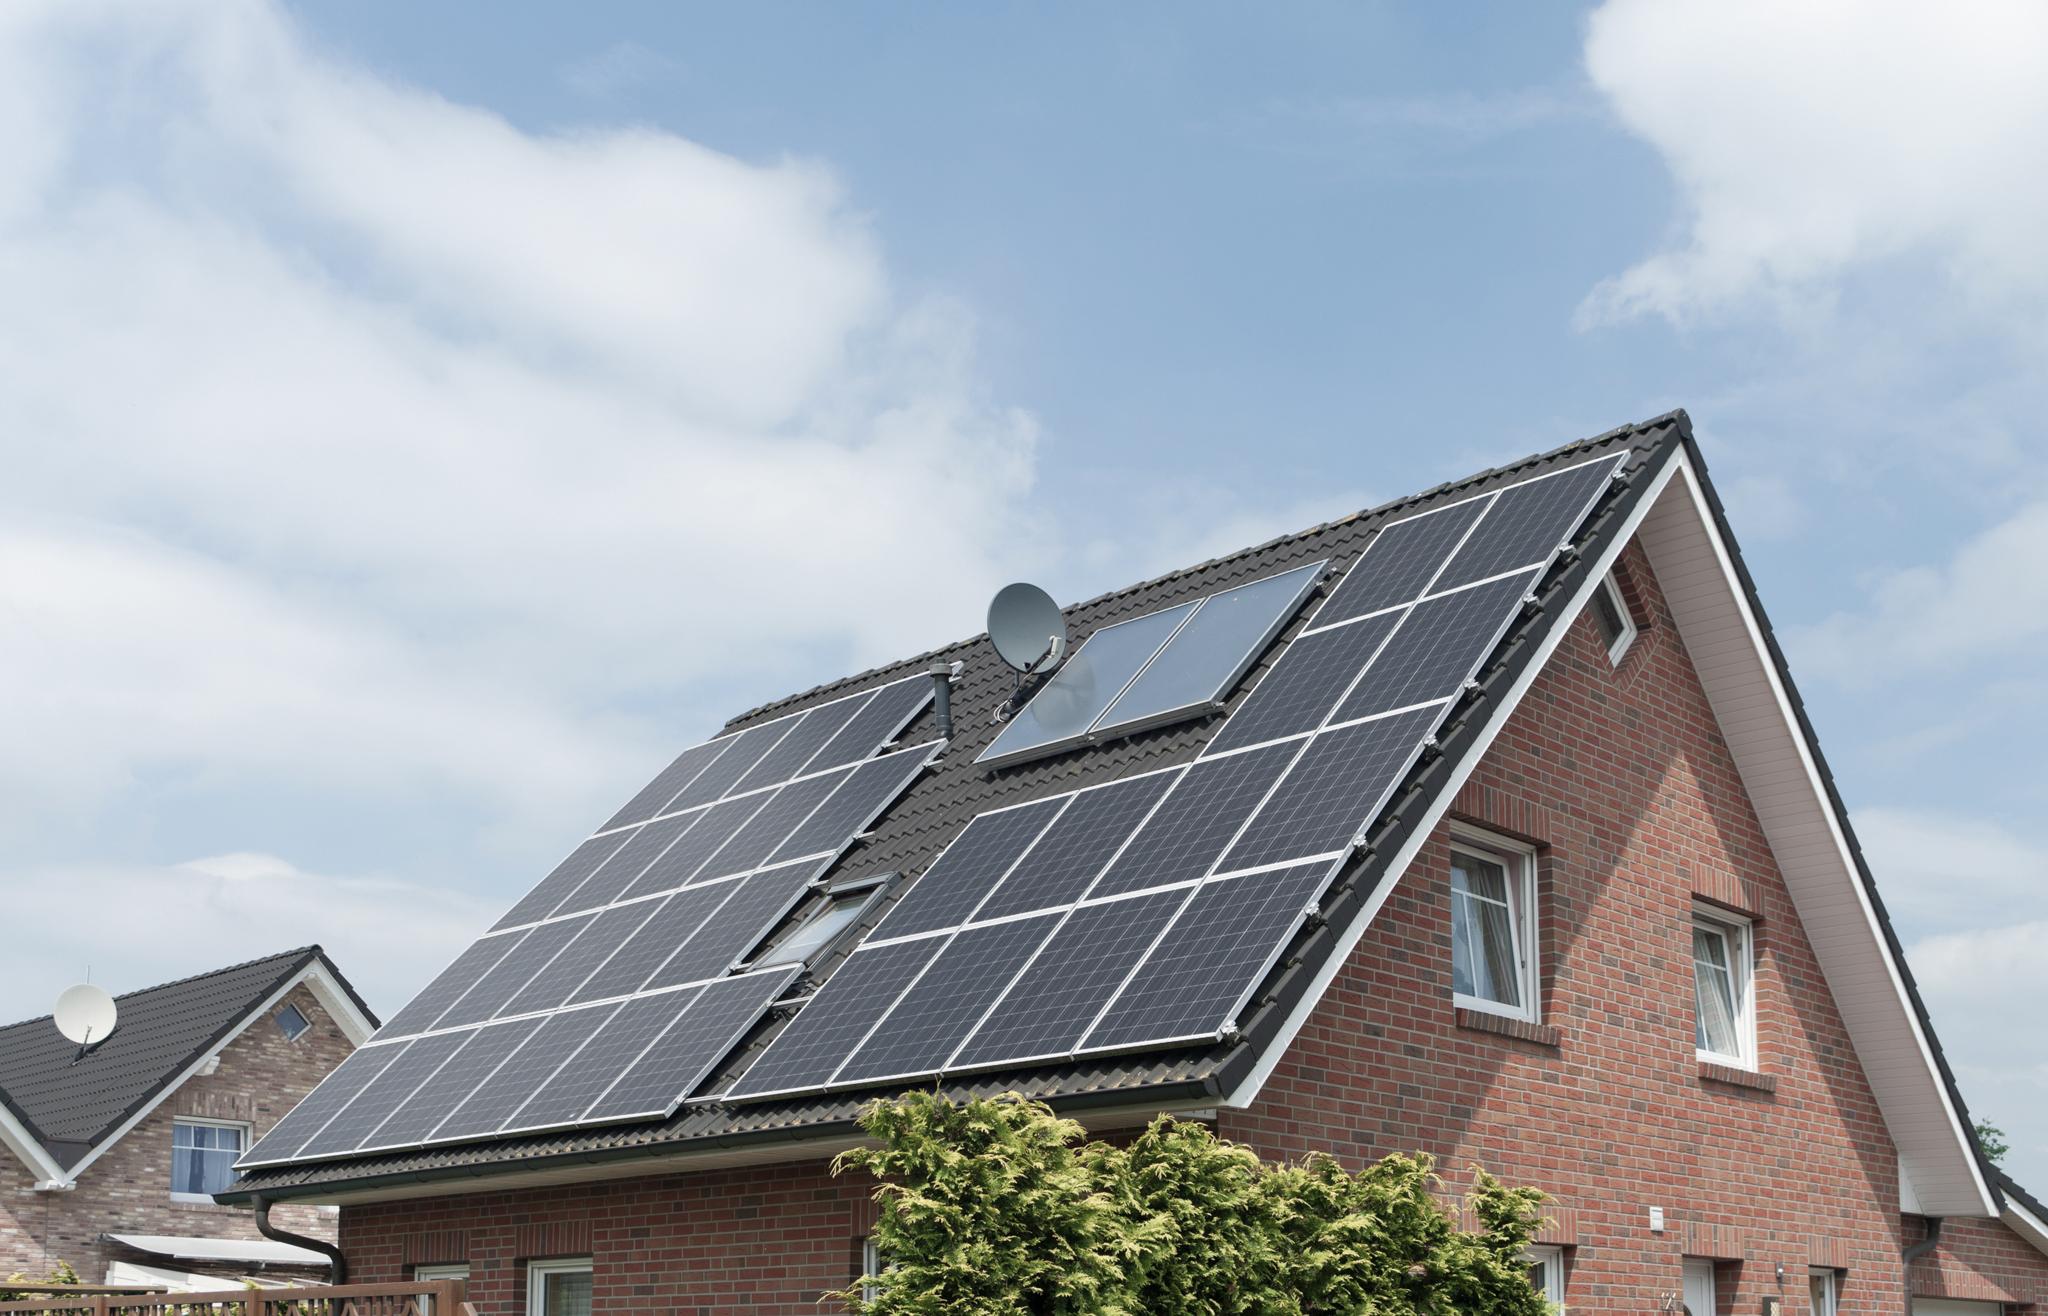 Einfamilienhaus mit Solaranlage auf dem Dach – Einspeisung ohne saldierenden Einspeisezähler